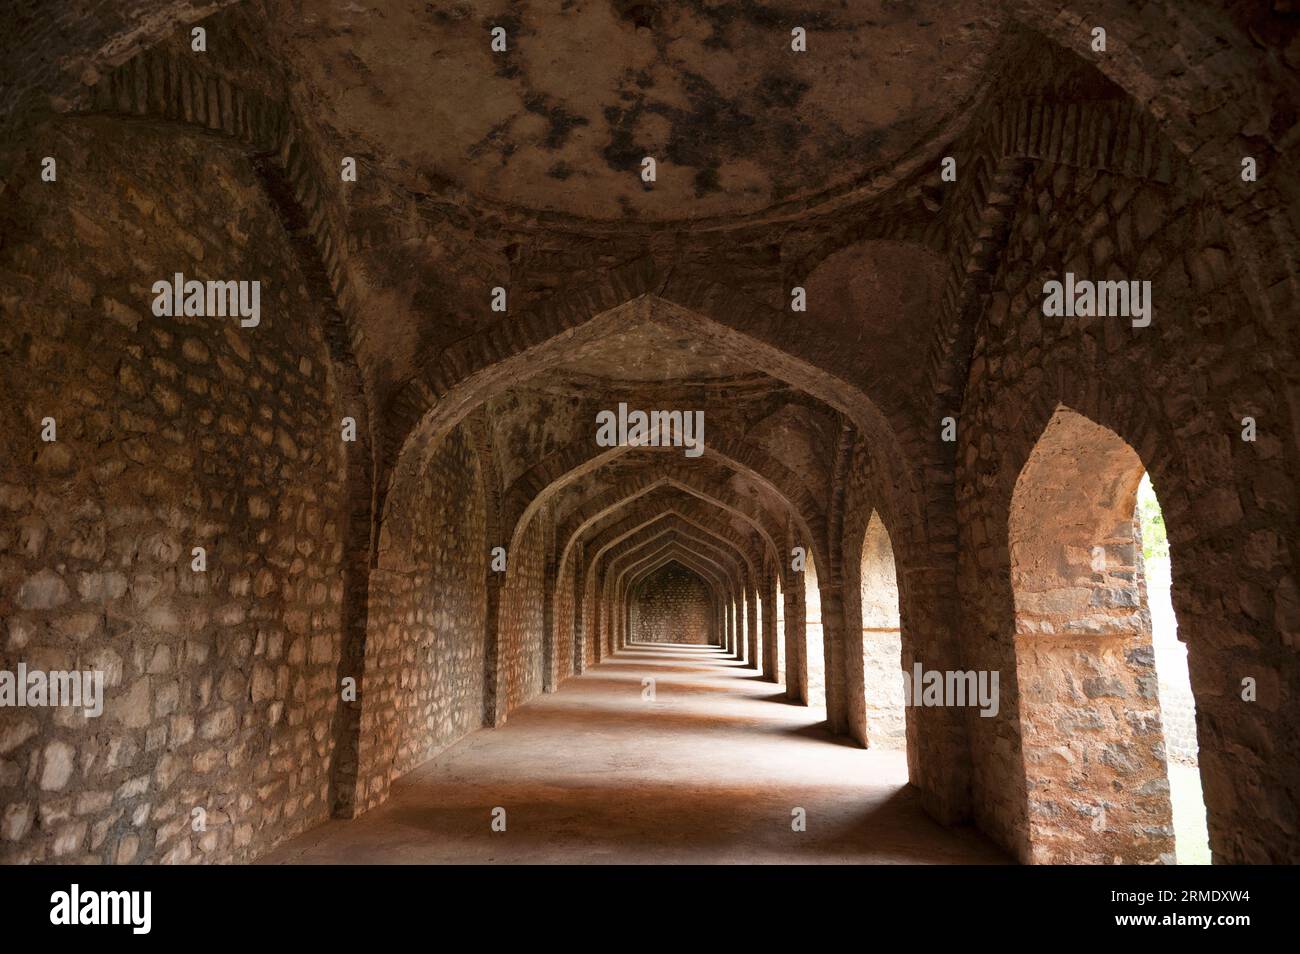 Interiors of Darya Khan's Tomb, located in Mandu, Madhya Pradesh, India Stock Photo